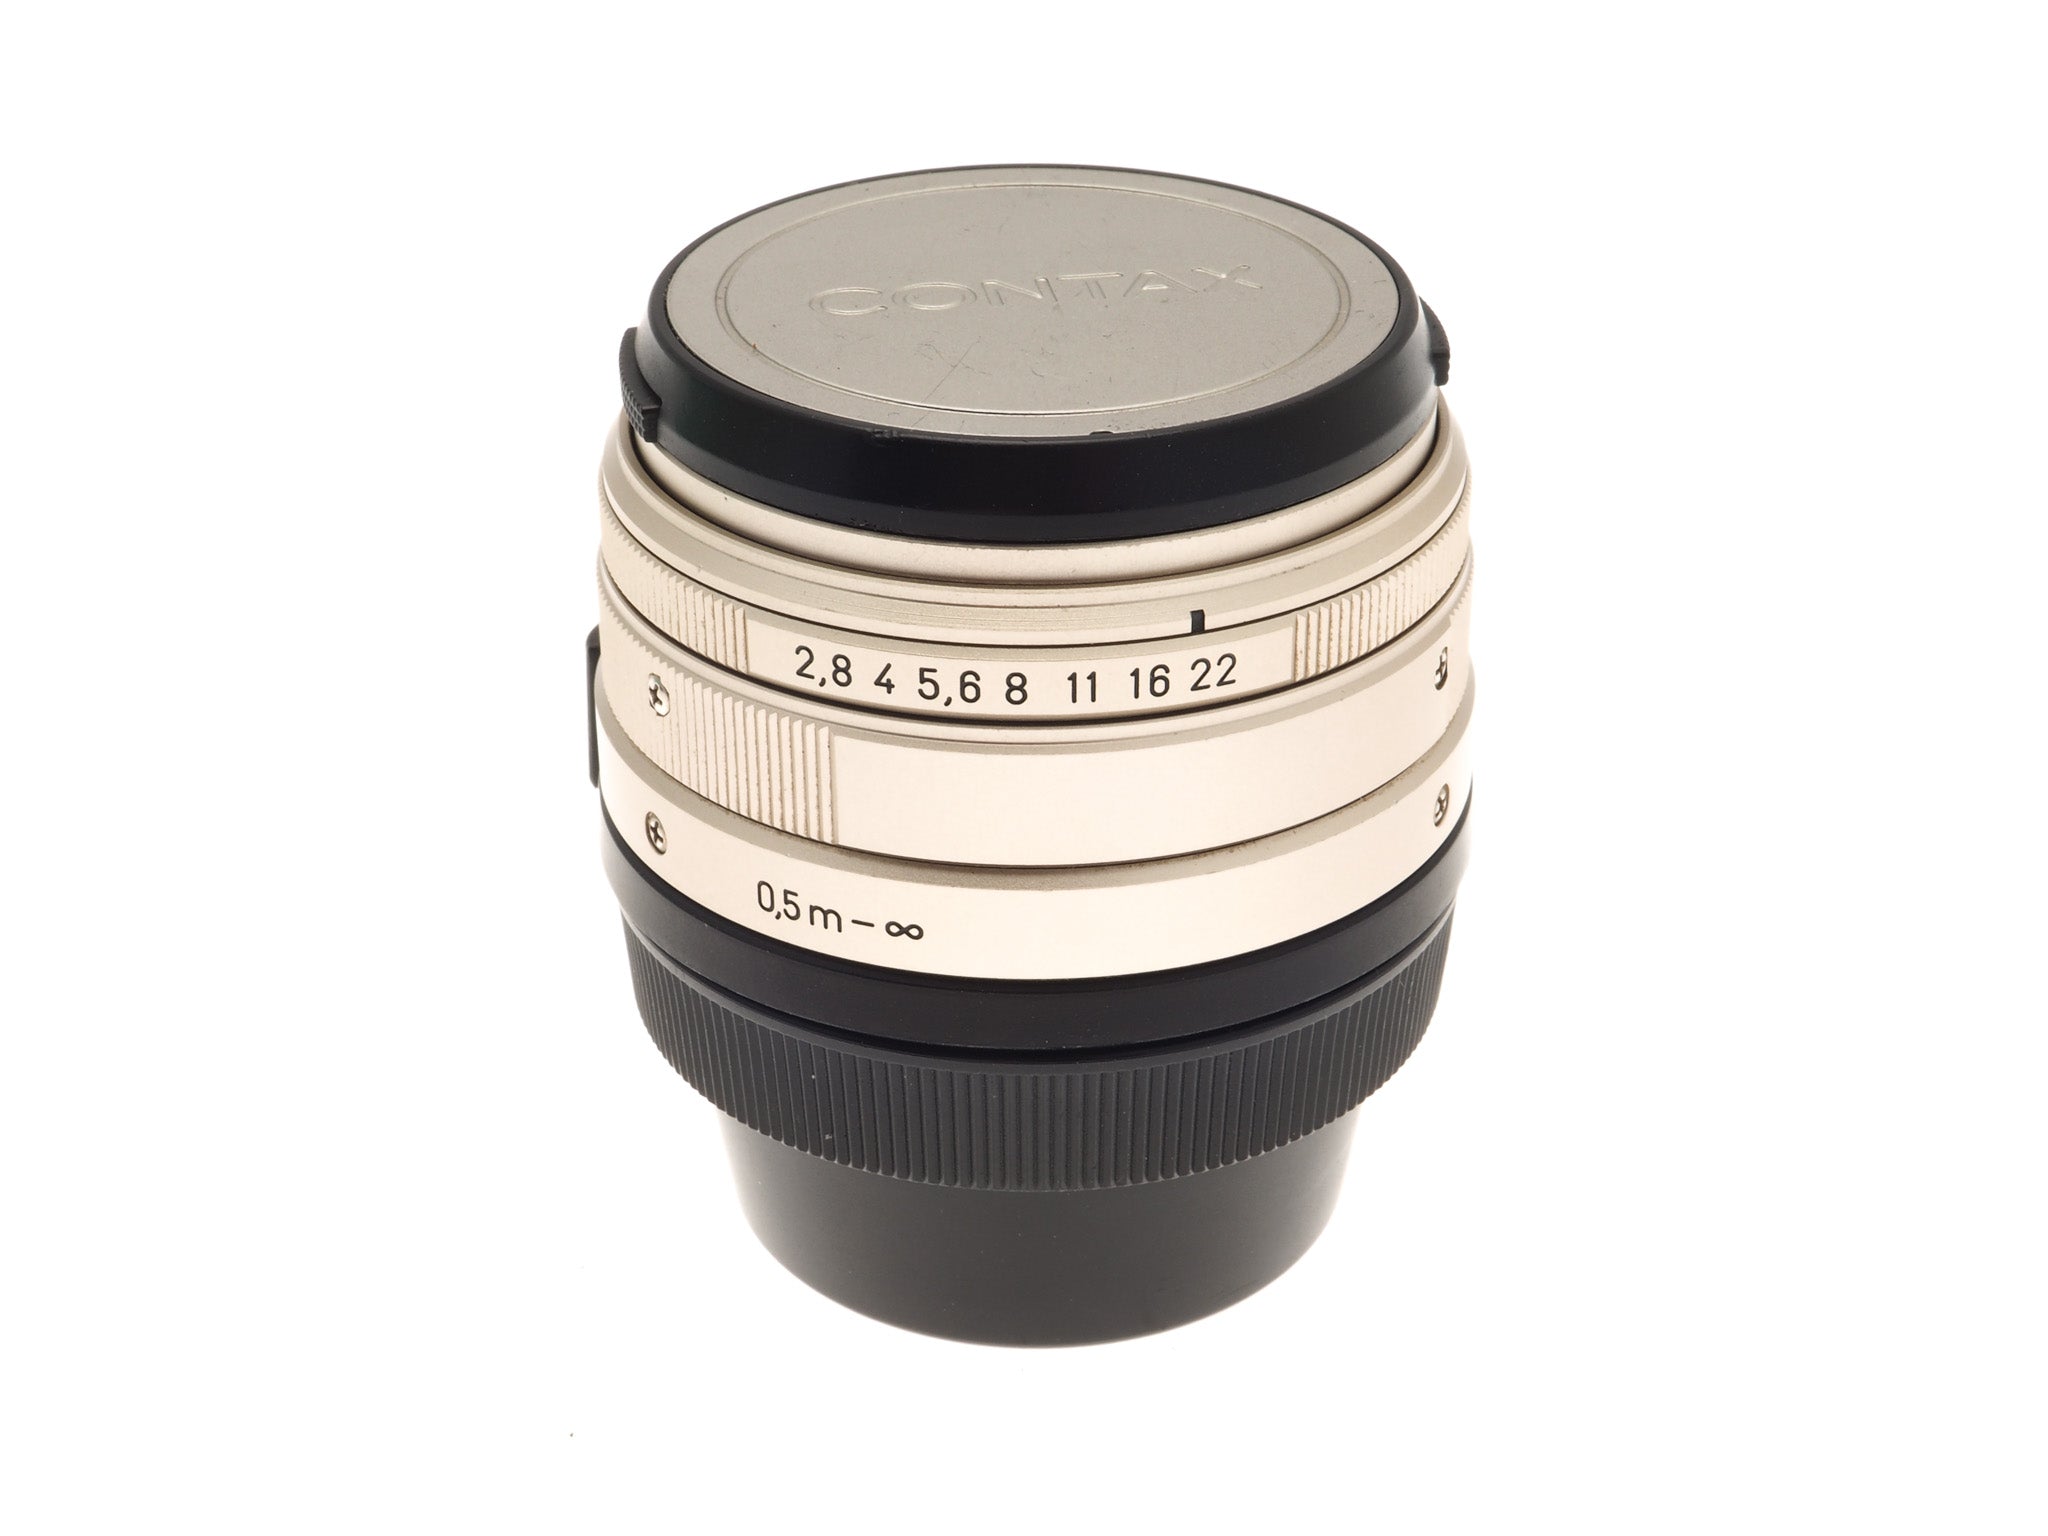 Carl Zeiss 28mm f2.8 Biogon T* - Lens